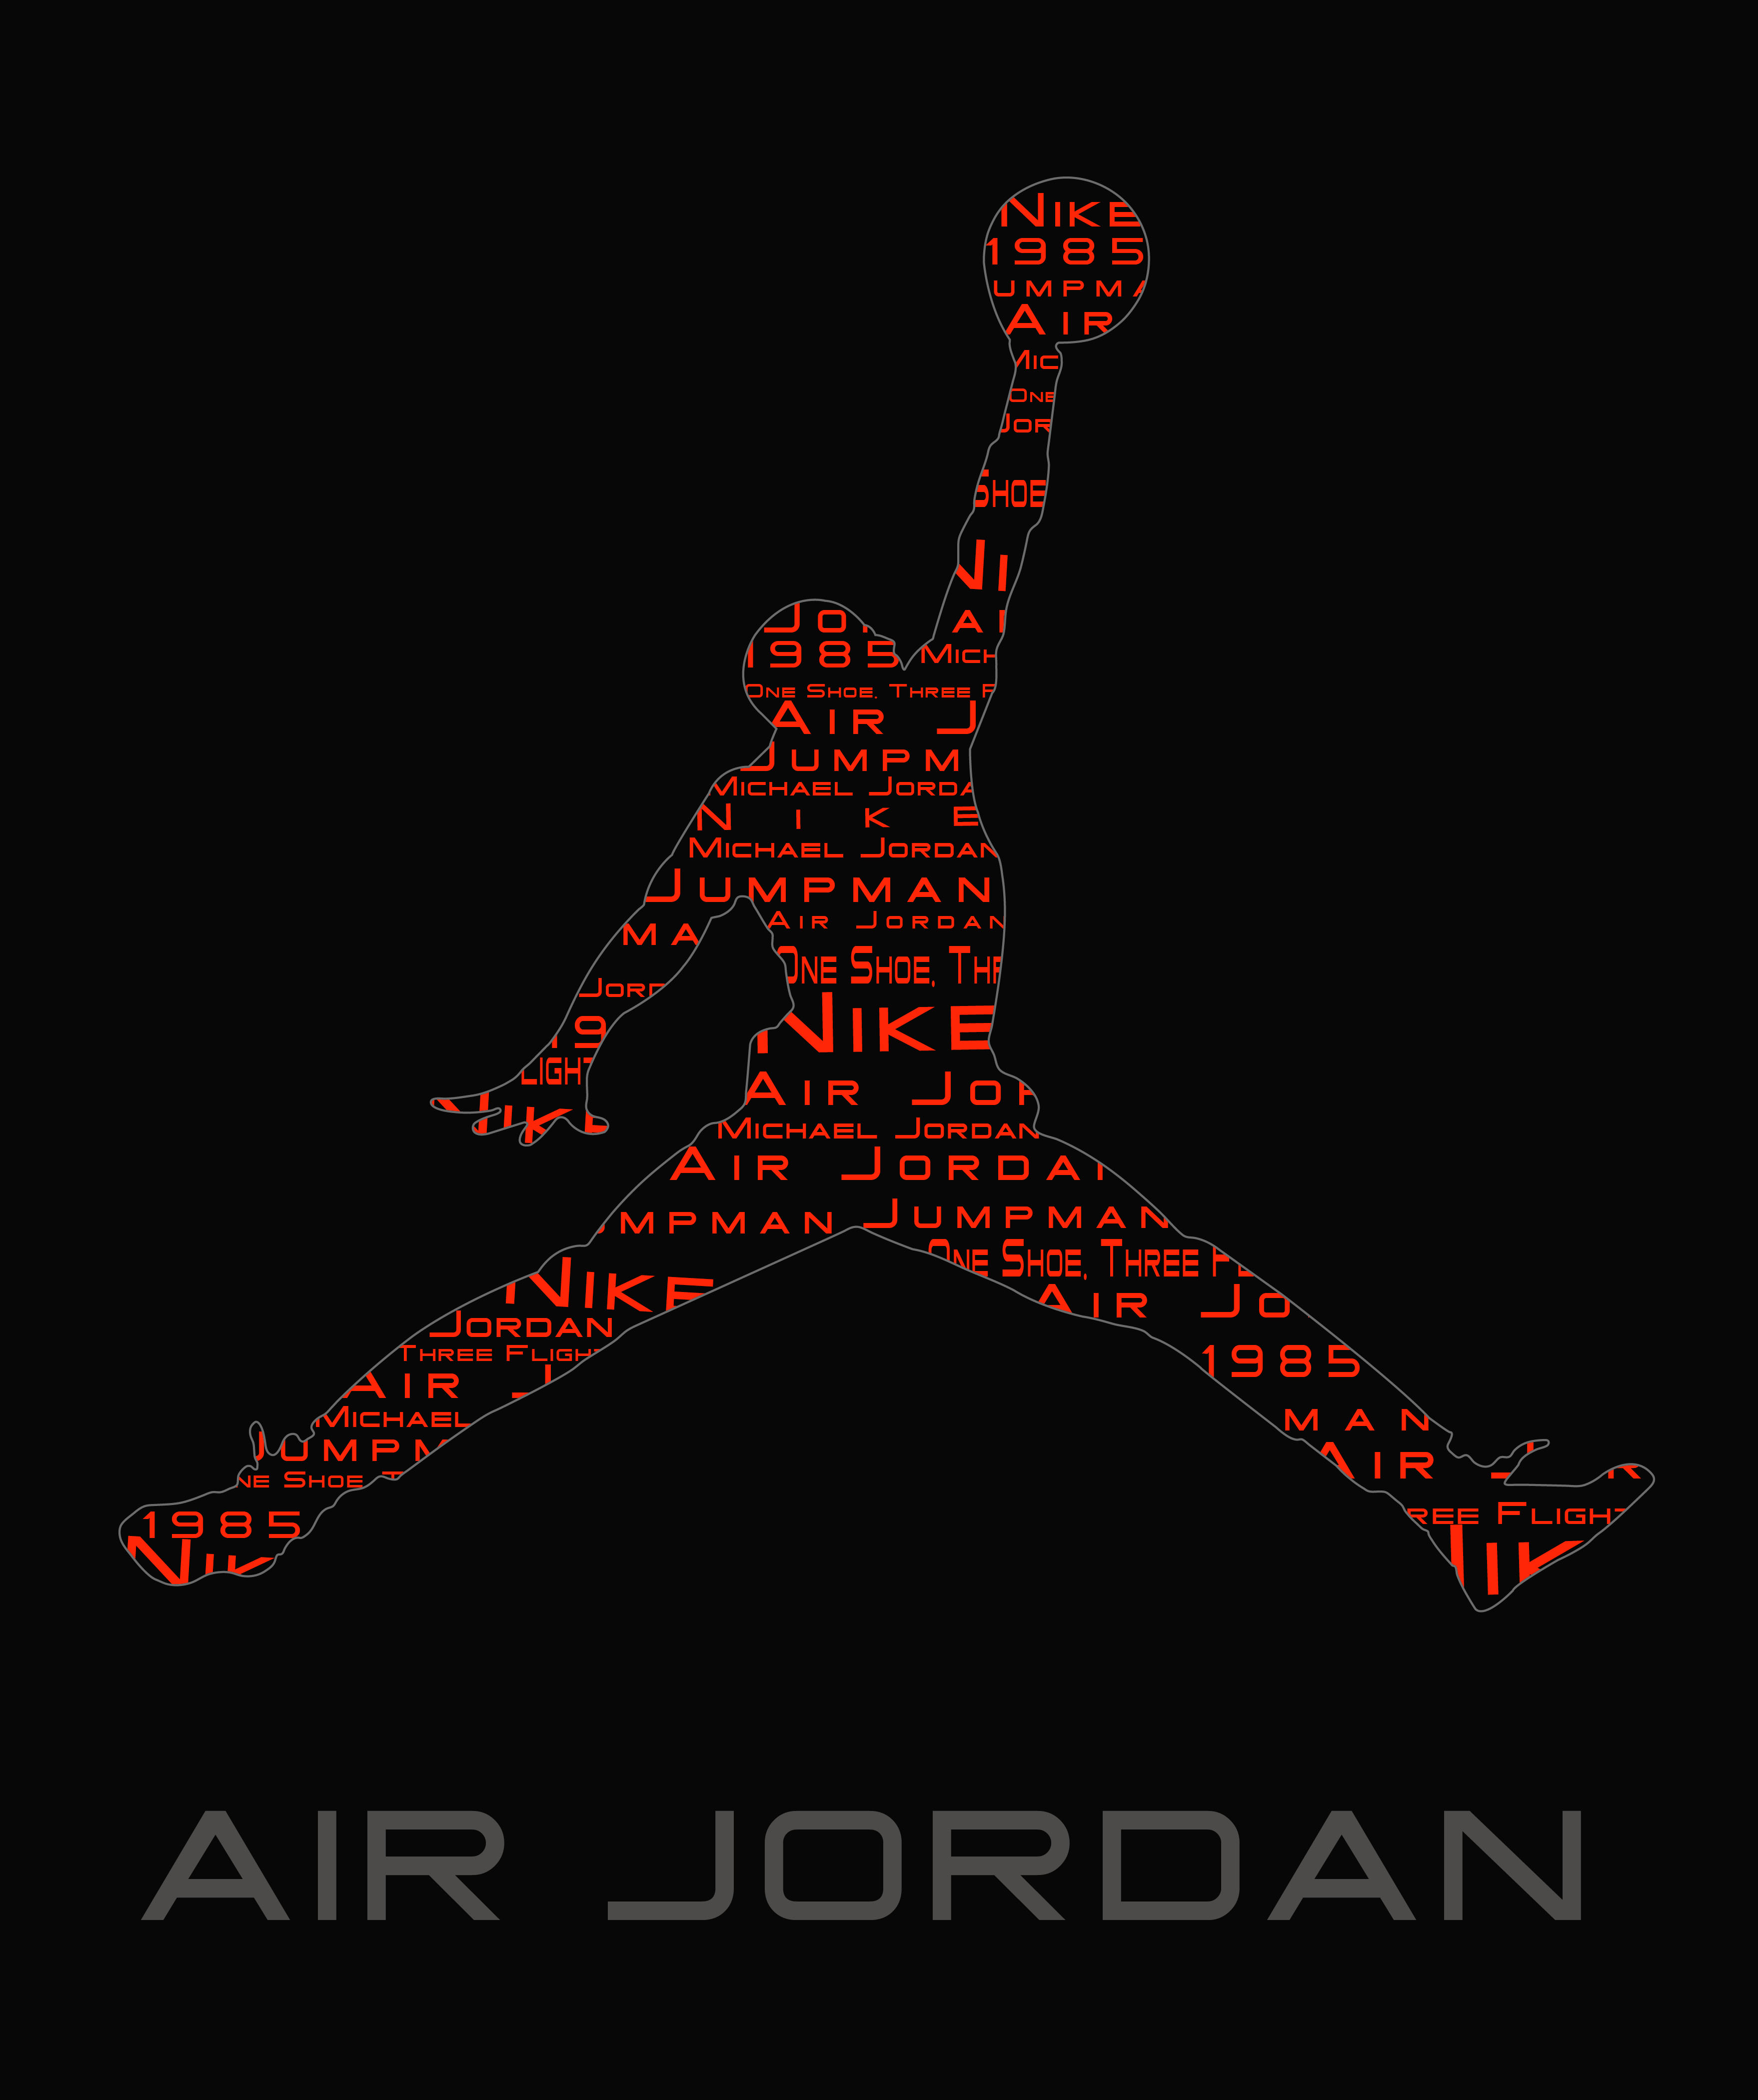 73+] Nike Air Jordan Wallpaper - WallpaperSafari